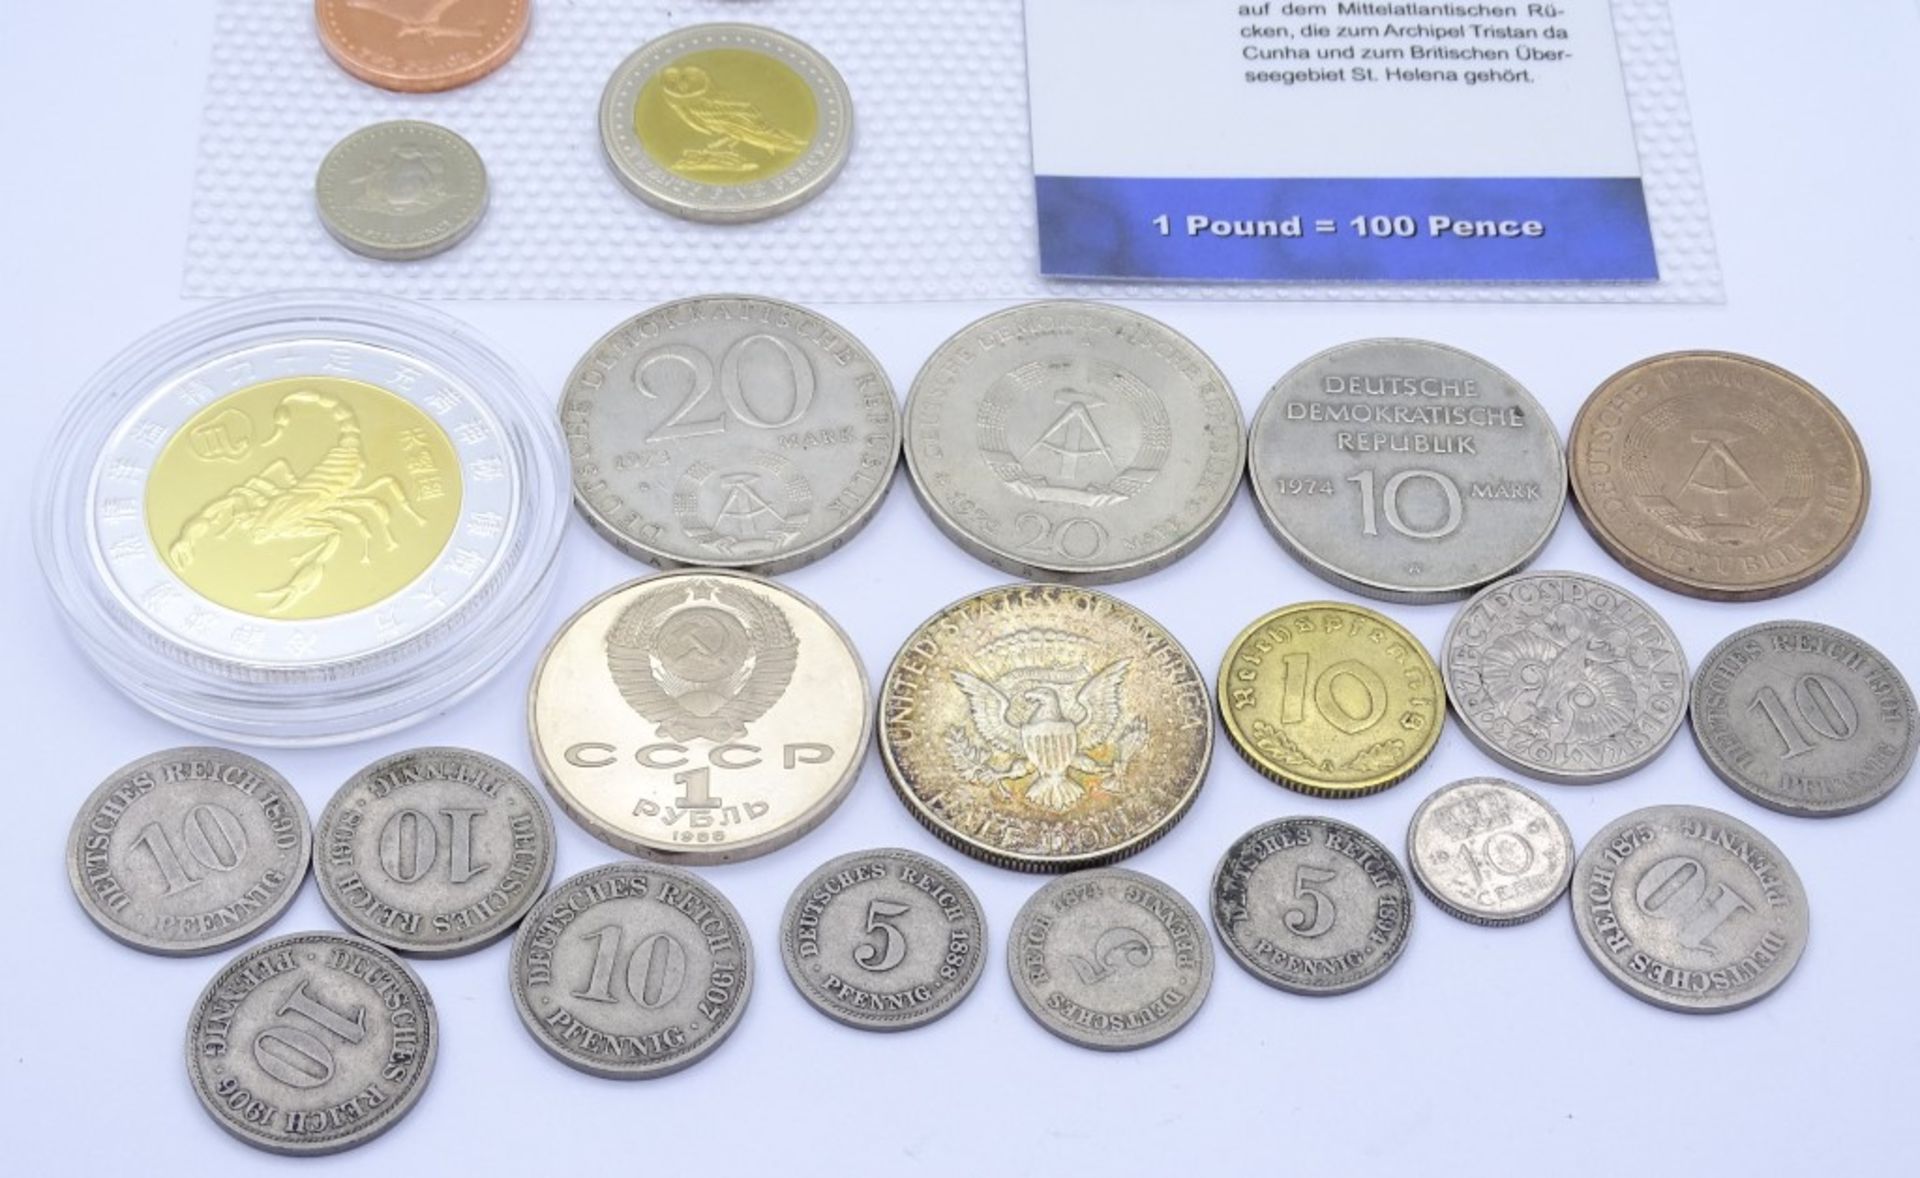 Konvolut div. Münzen,Deutschland,England,USA,Pole - Bild 3 aus 3